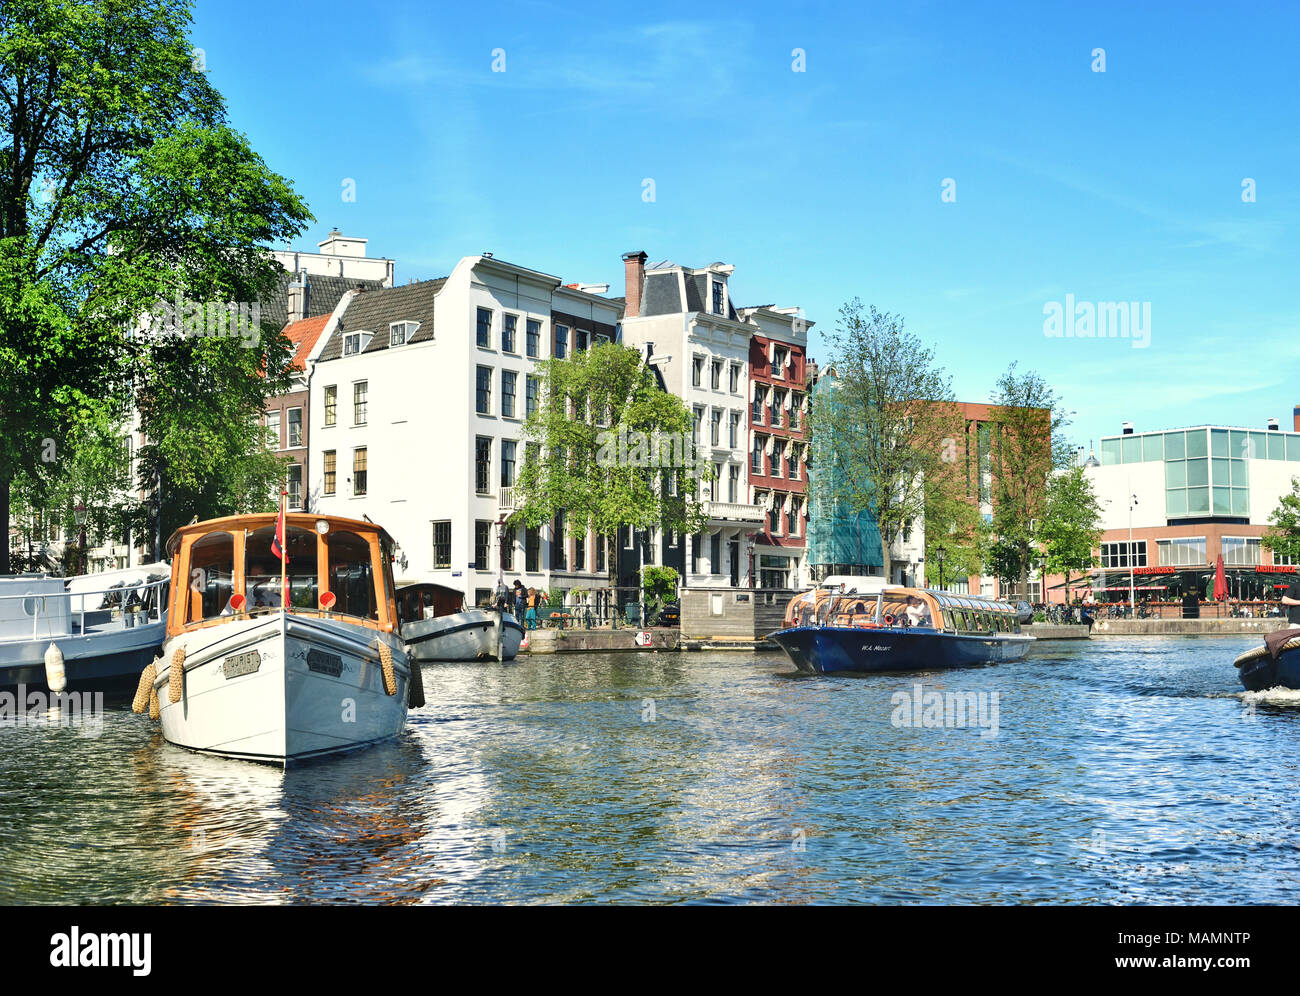 Canal ou gracht à Amsterdam City. Scène de rivière Amstel avec des bateaux et des maisons anciennes. Banque D'Images